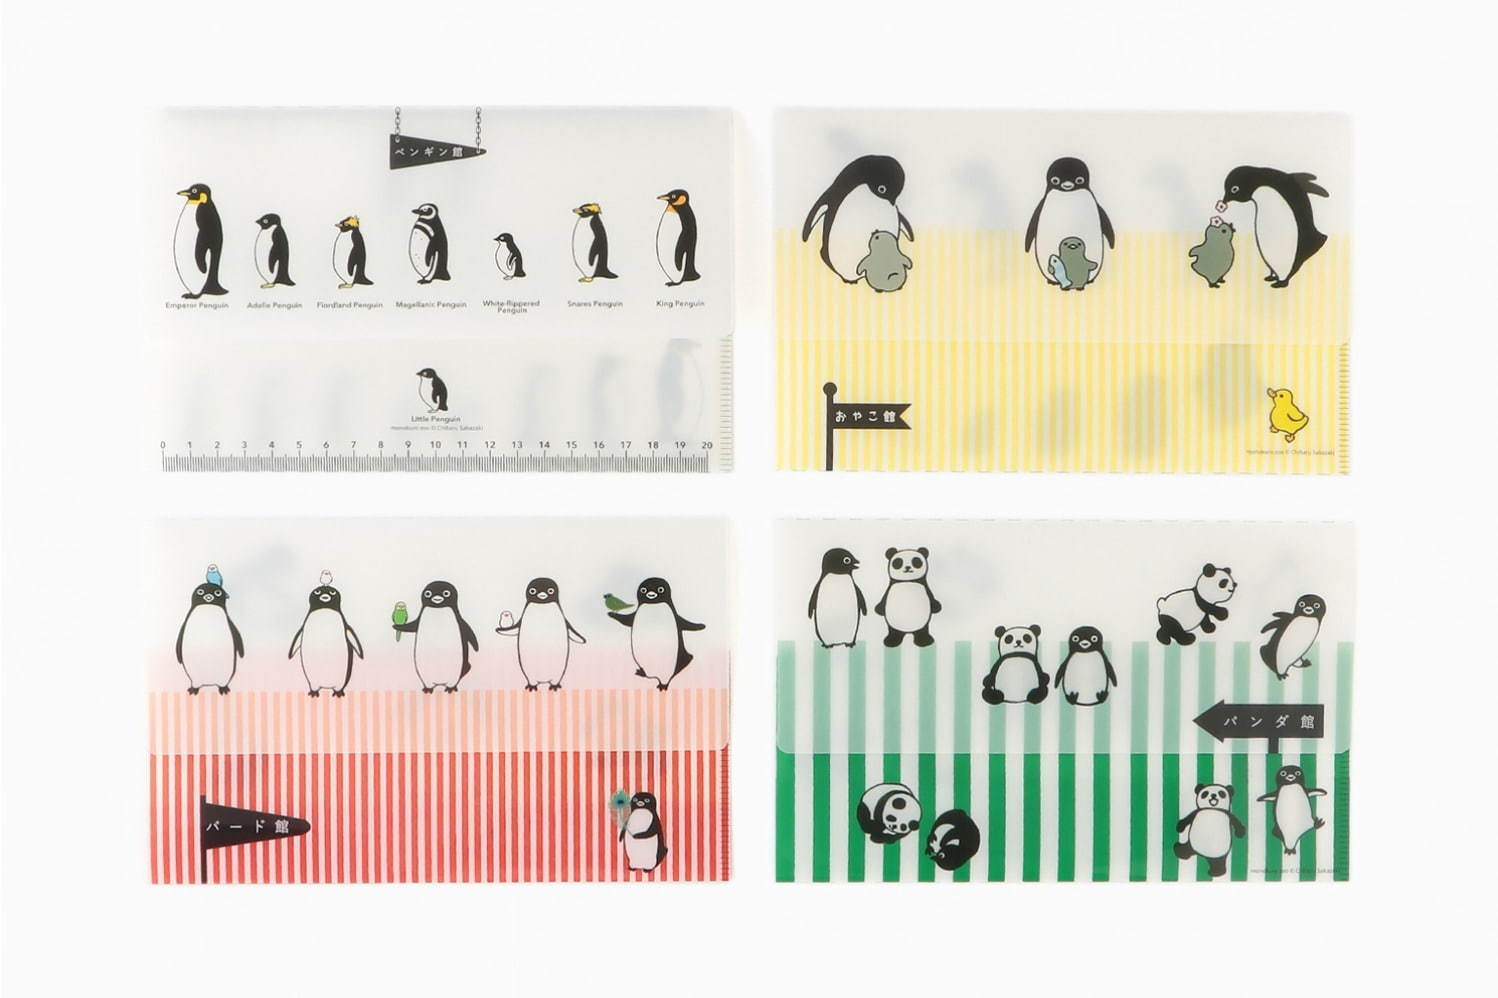 Suicaのペンギン作家による限定ストア モノクロ動物園 伊勢丹新宿で 原画や限定グッズなど ファッションプレス